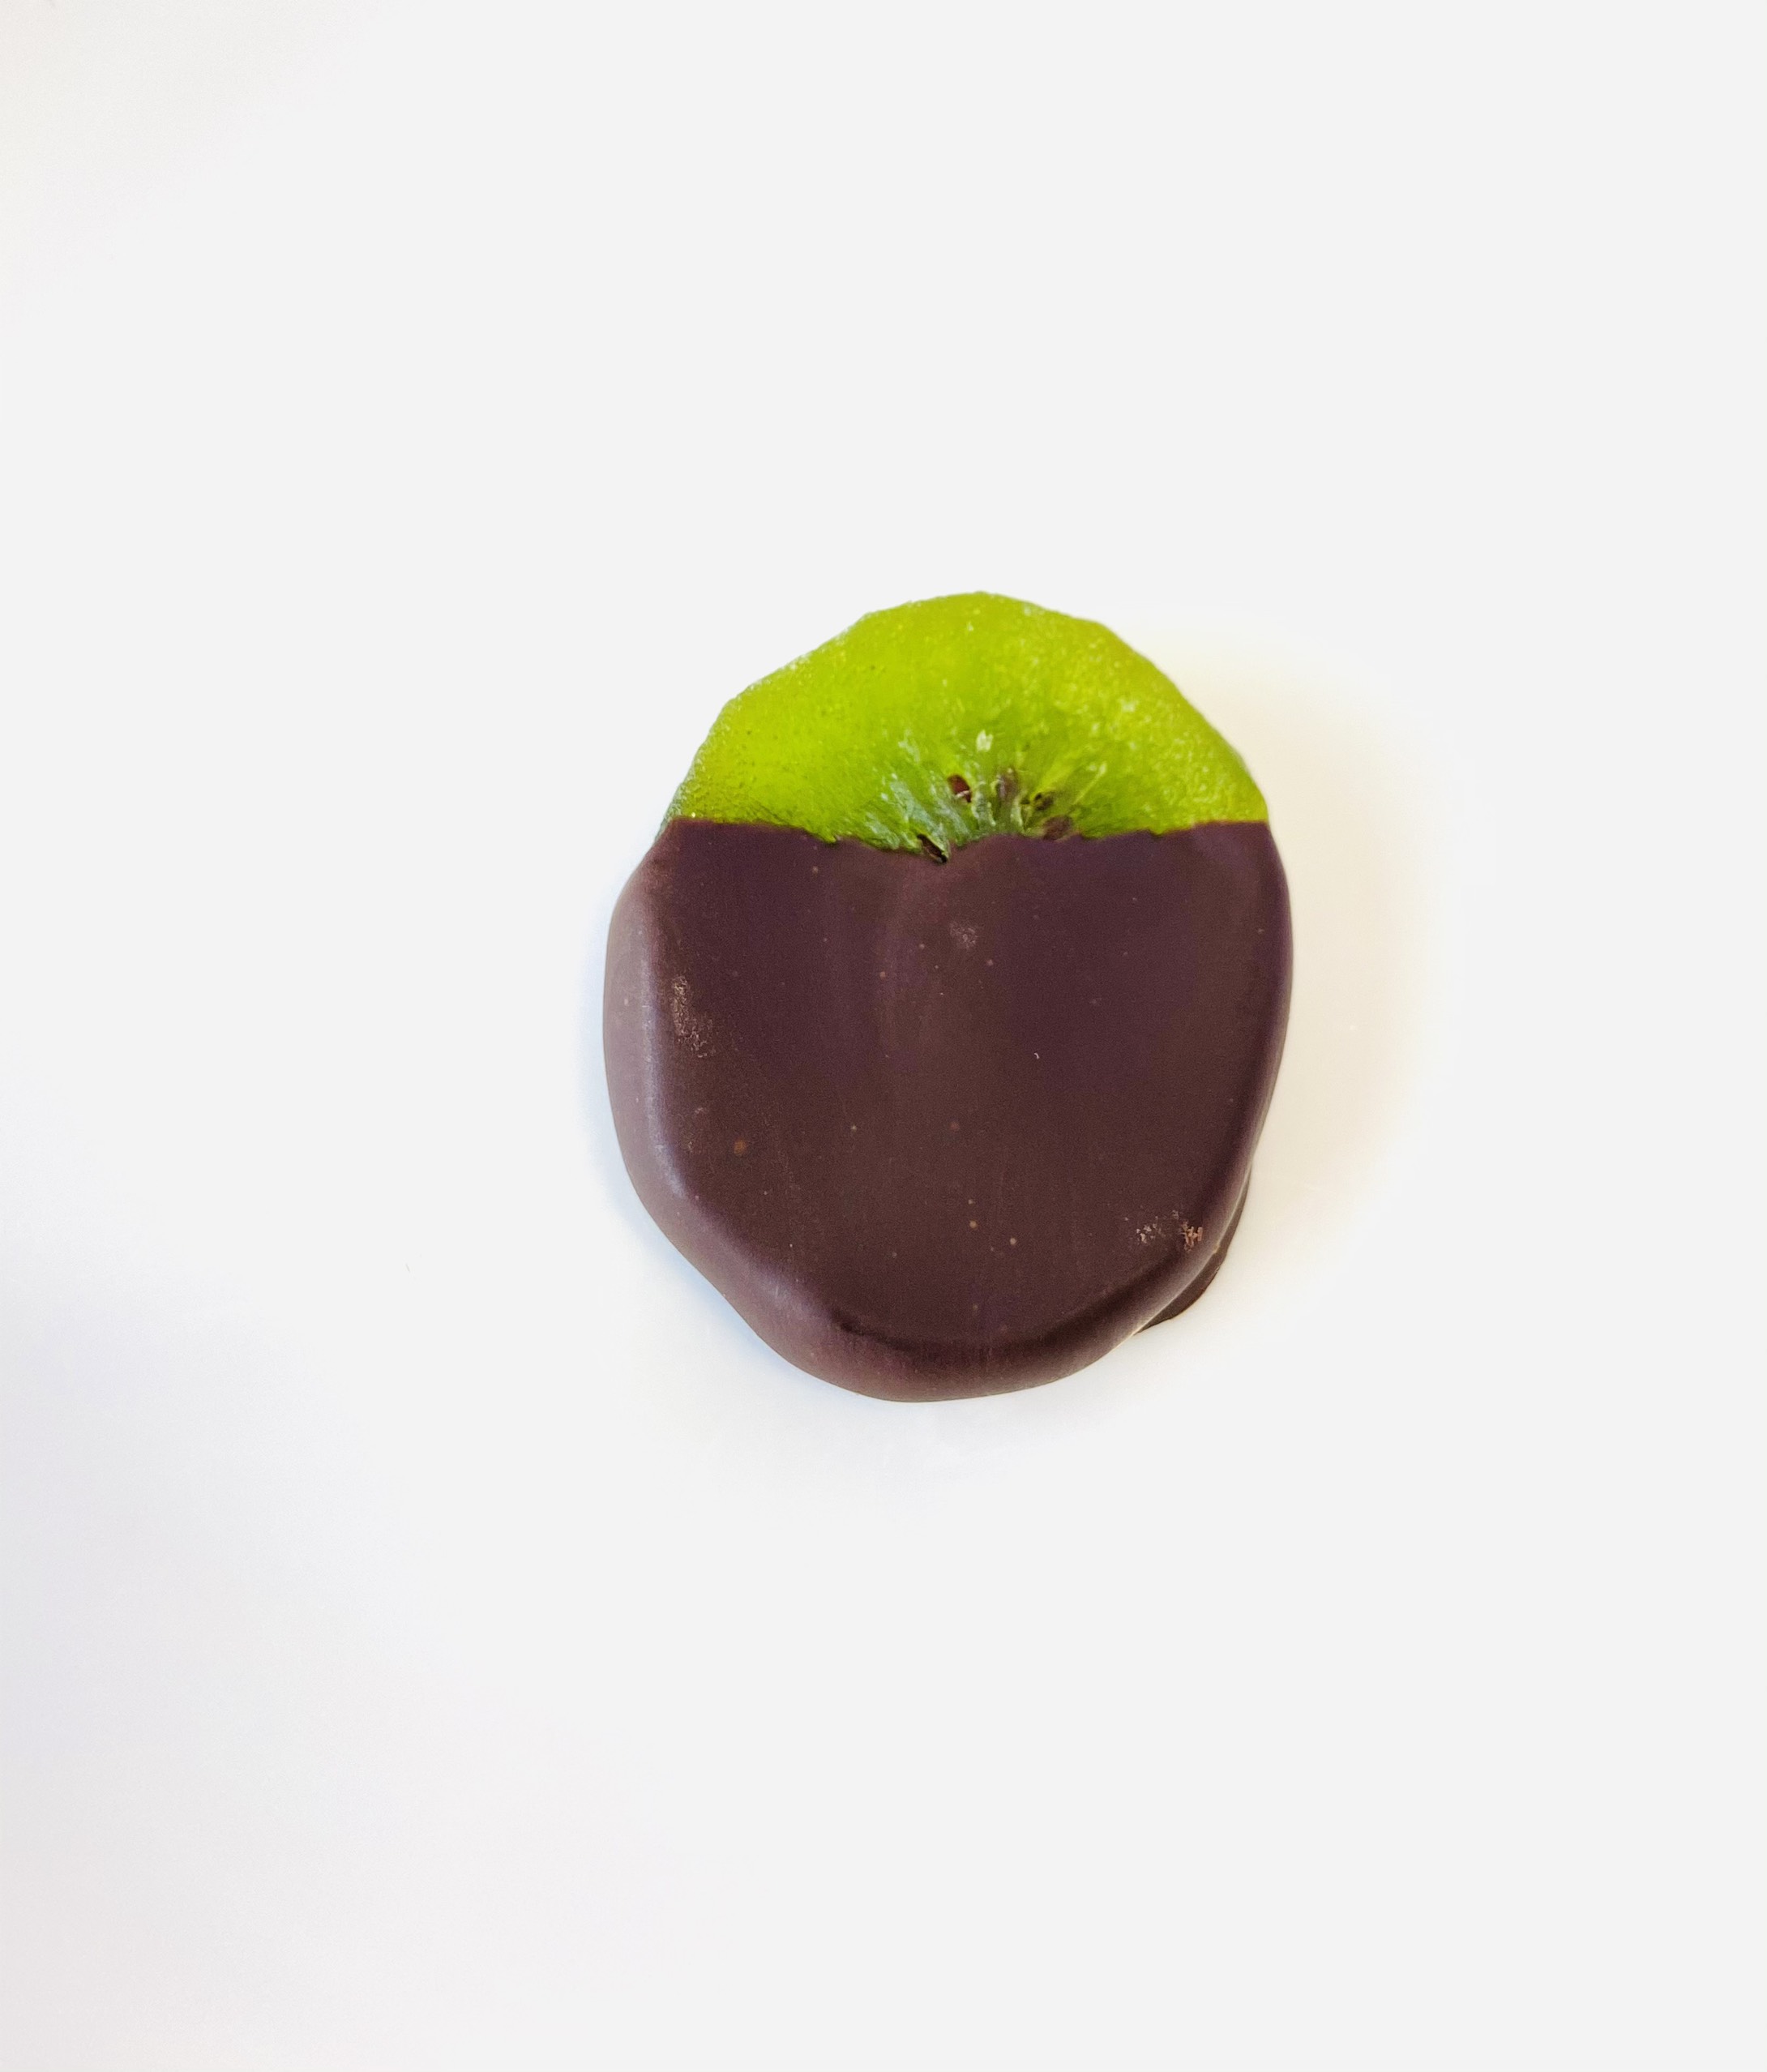 Kiwi nhúng socola - hũ thủy tinh 120g  - SHE Chocolate - Đa dạng vị giác, bổ sung năng lượng. Quà tặng người thân, dịp lễ, thích hợp ăn vặt